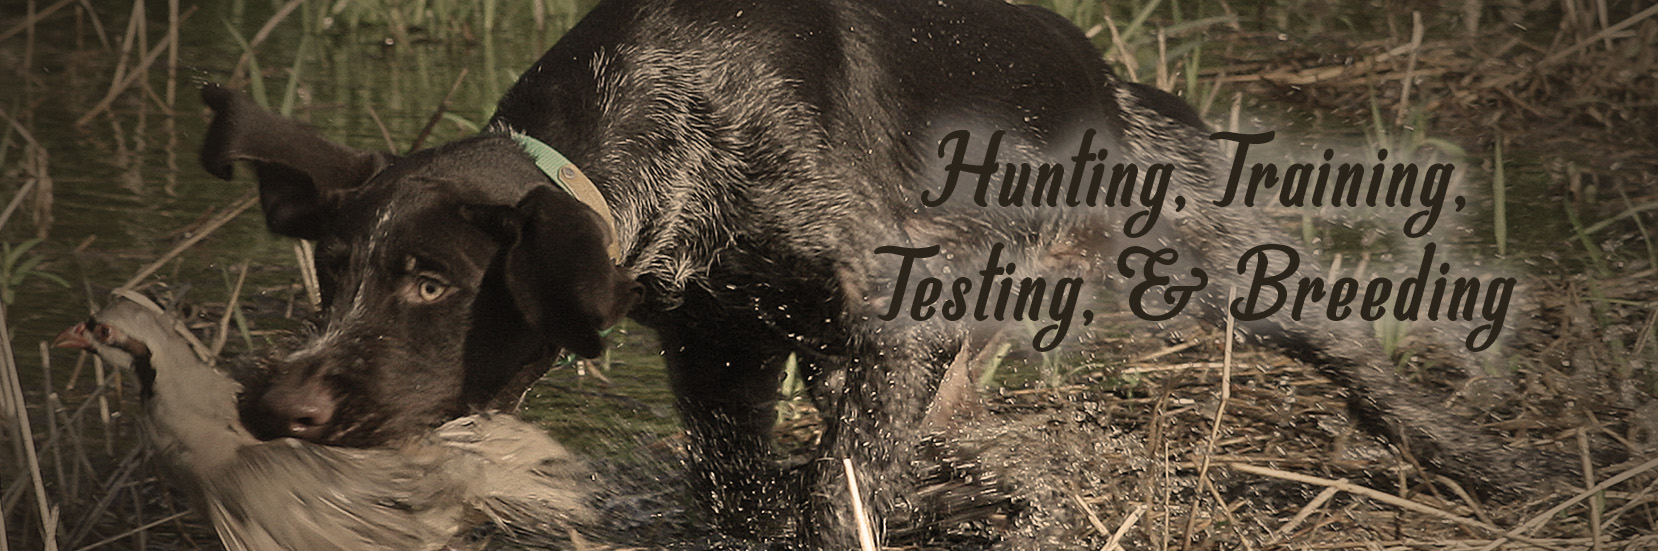 Hunting, Training, Testing, Breeding